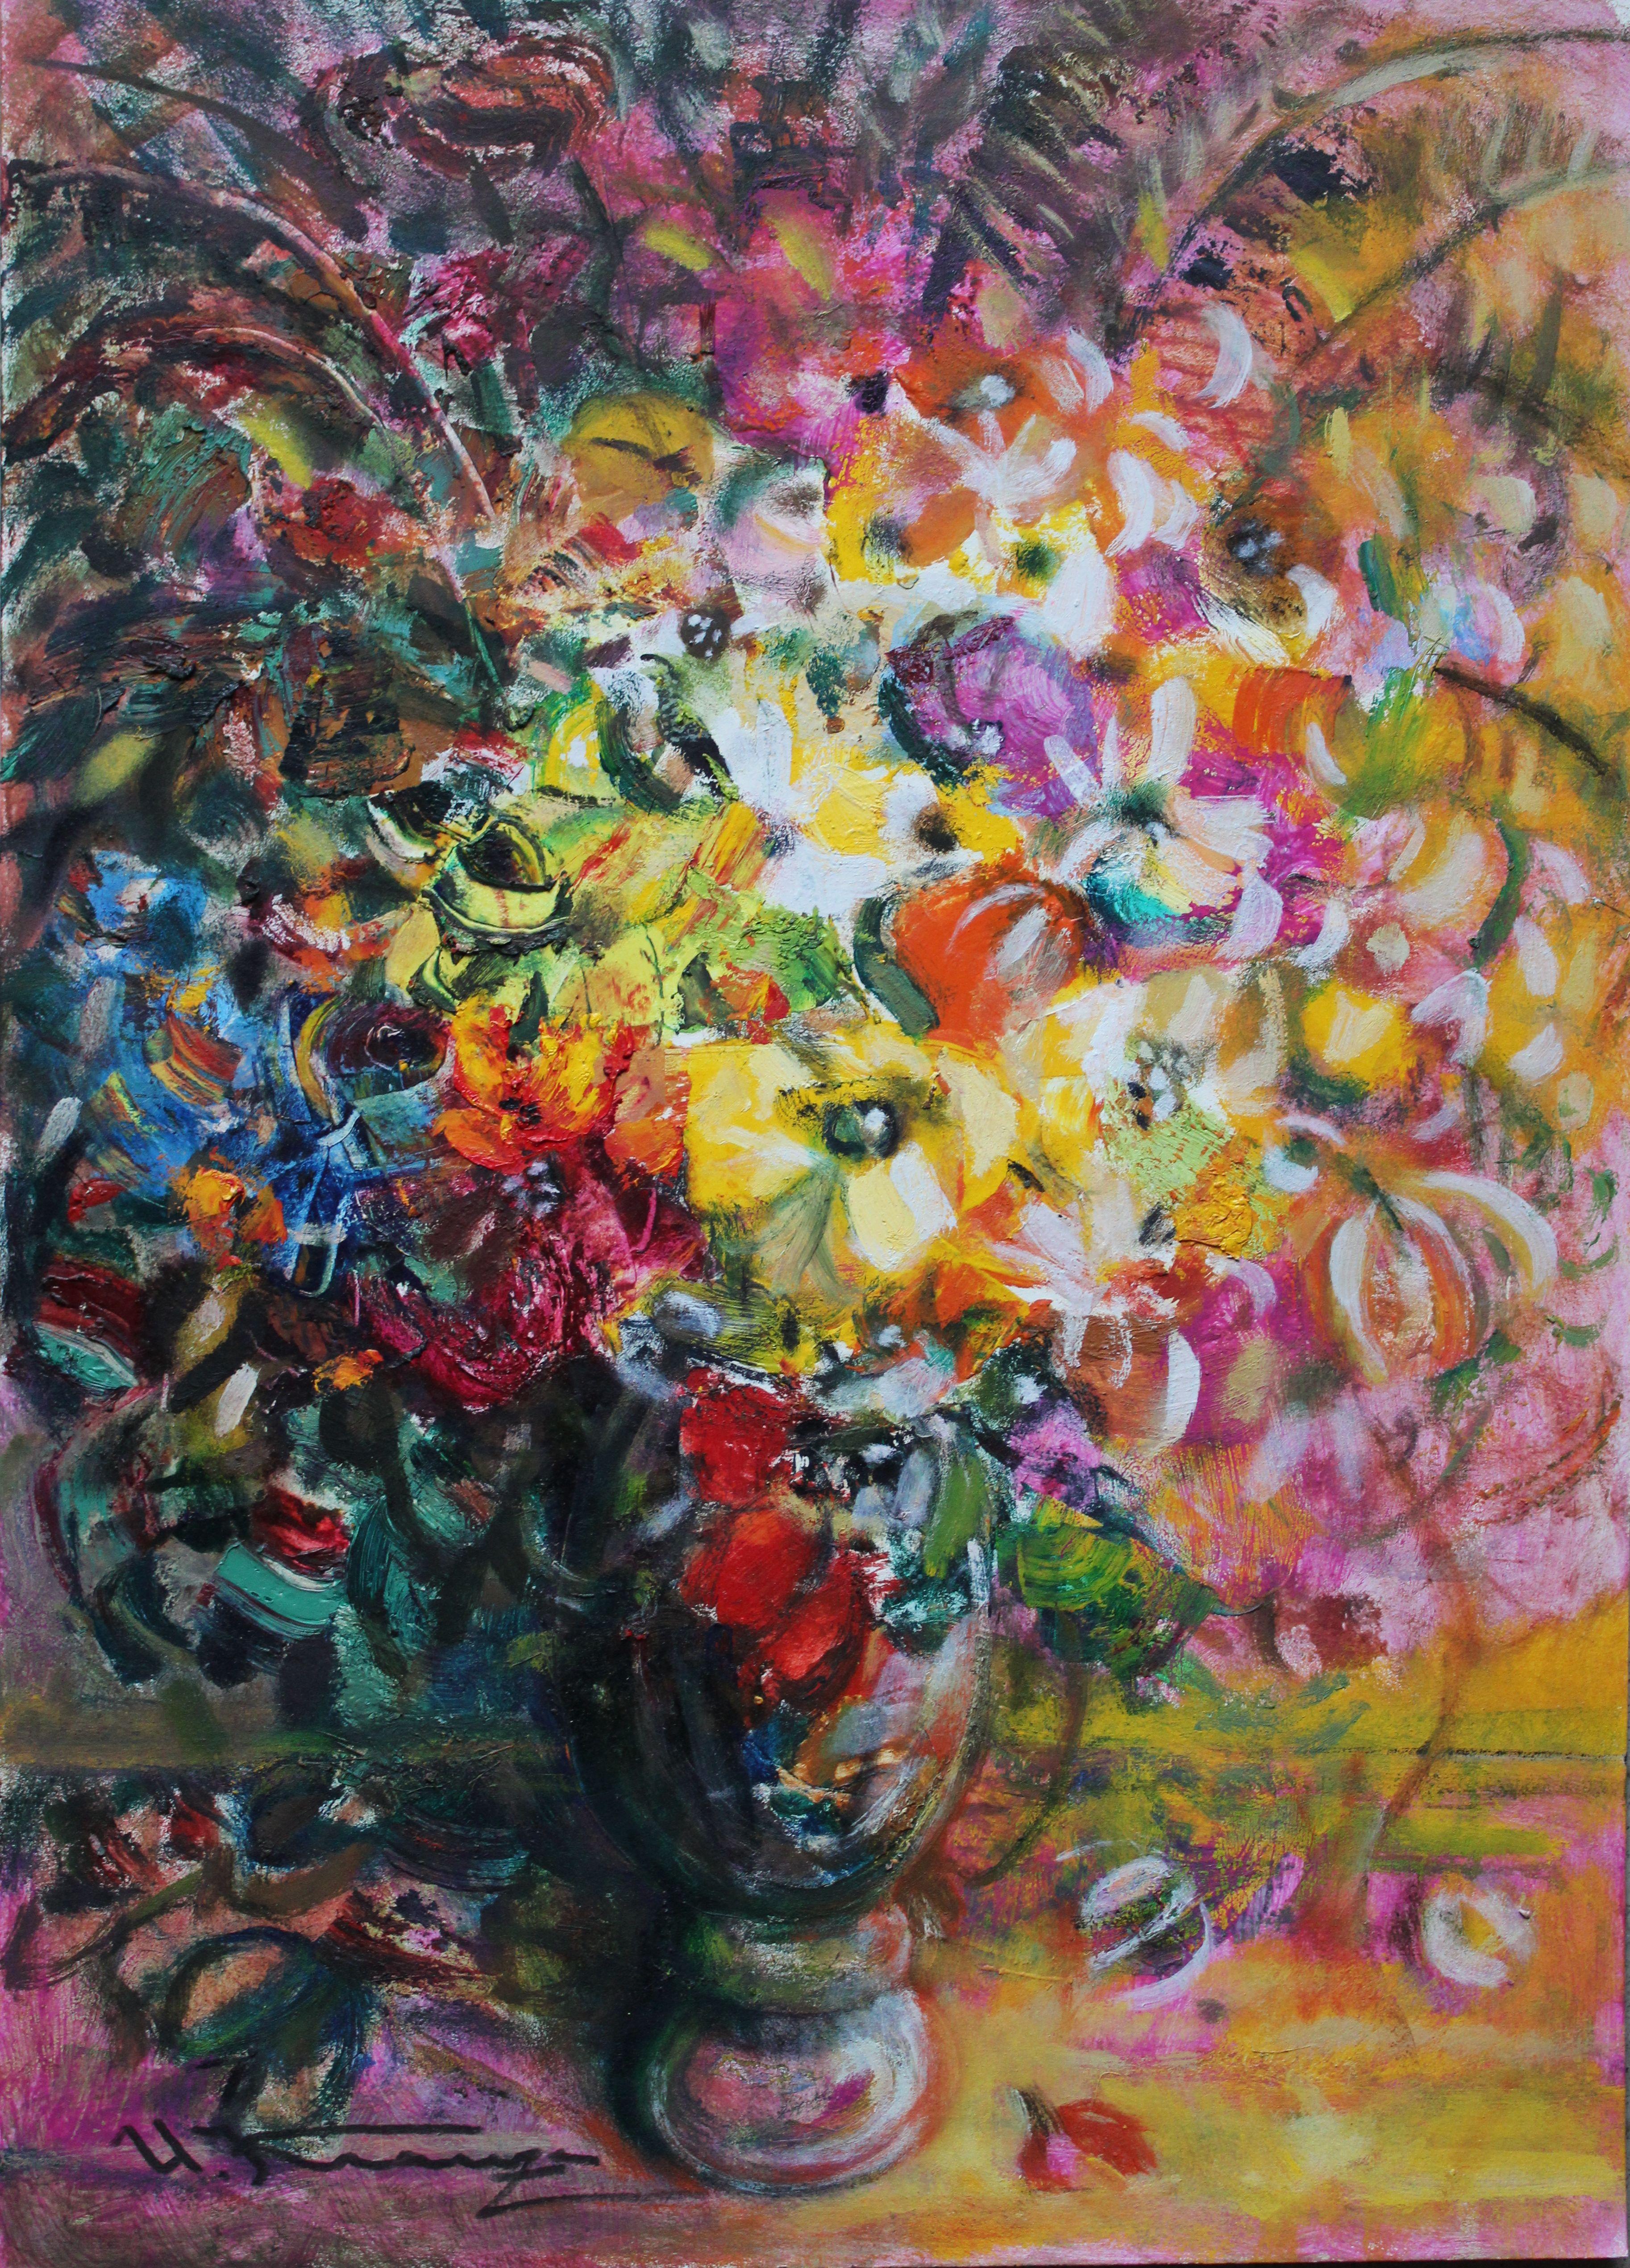 Flowers in a vase  2010, cardboard, oil, 64x46 cm - Art by Uldis Krauze